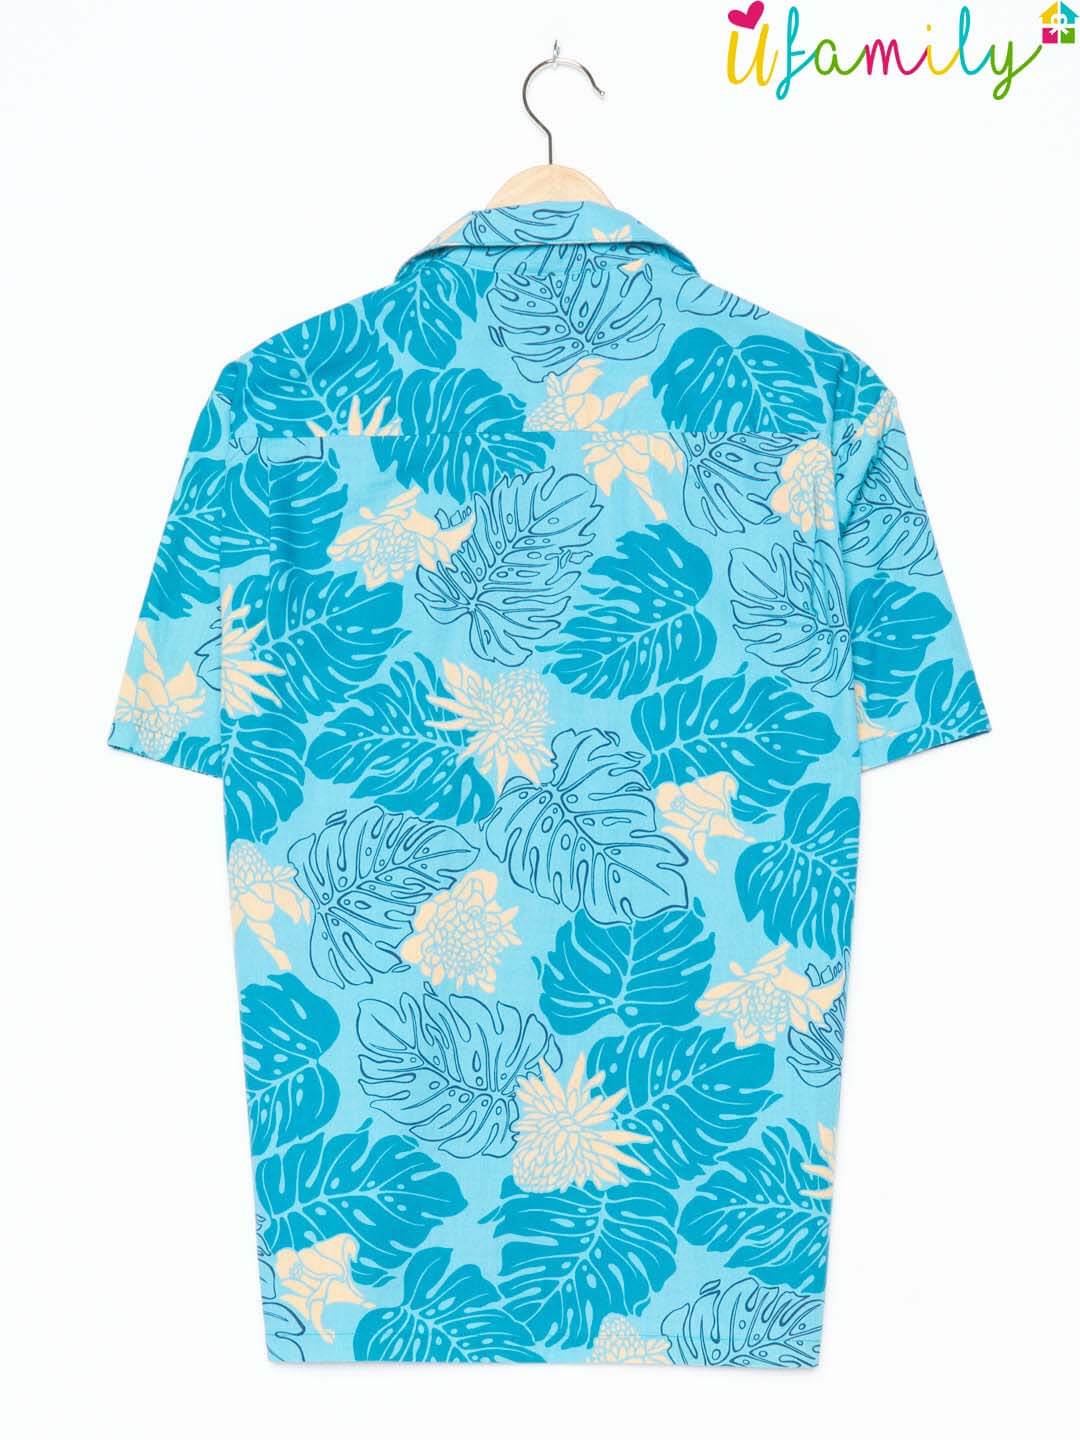 The Hawaiian Original Blue Vintage Hawaiian Shirt